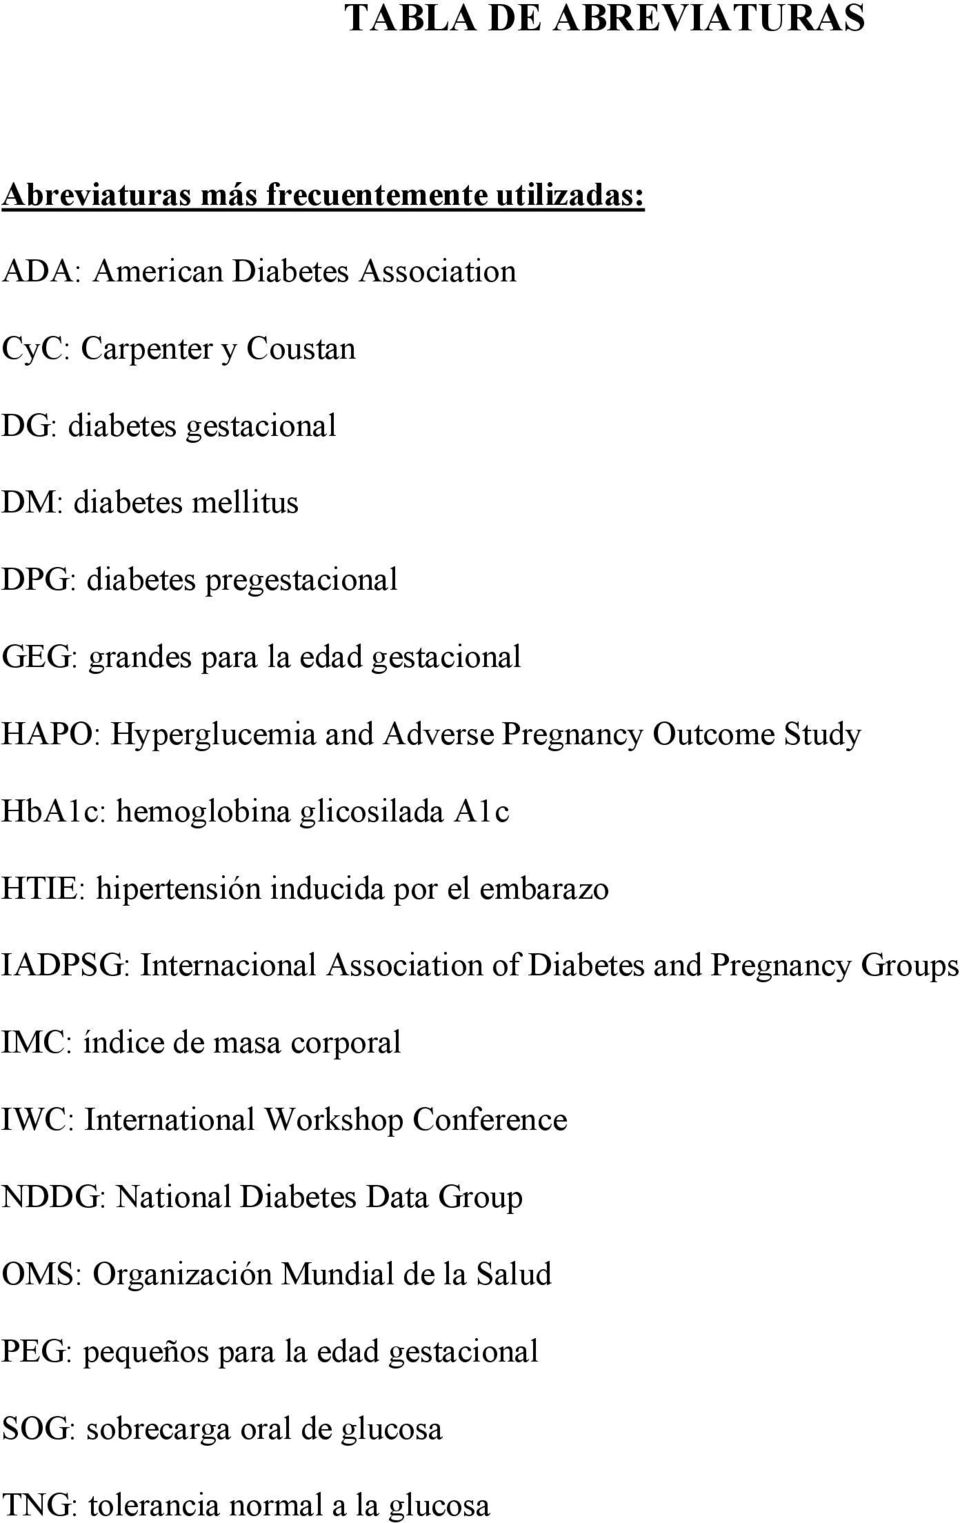 hipertensión inducida por el embarazo IADPSG: Internacional Association of Diabetes and Pregnancy Groups IMC: índice de masa corporal IWC: International Workshop Conference